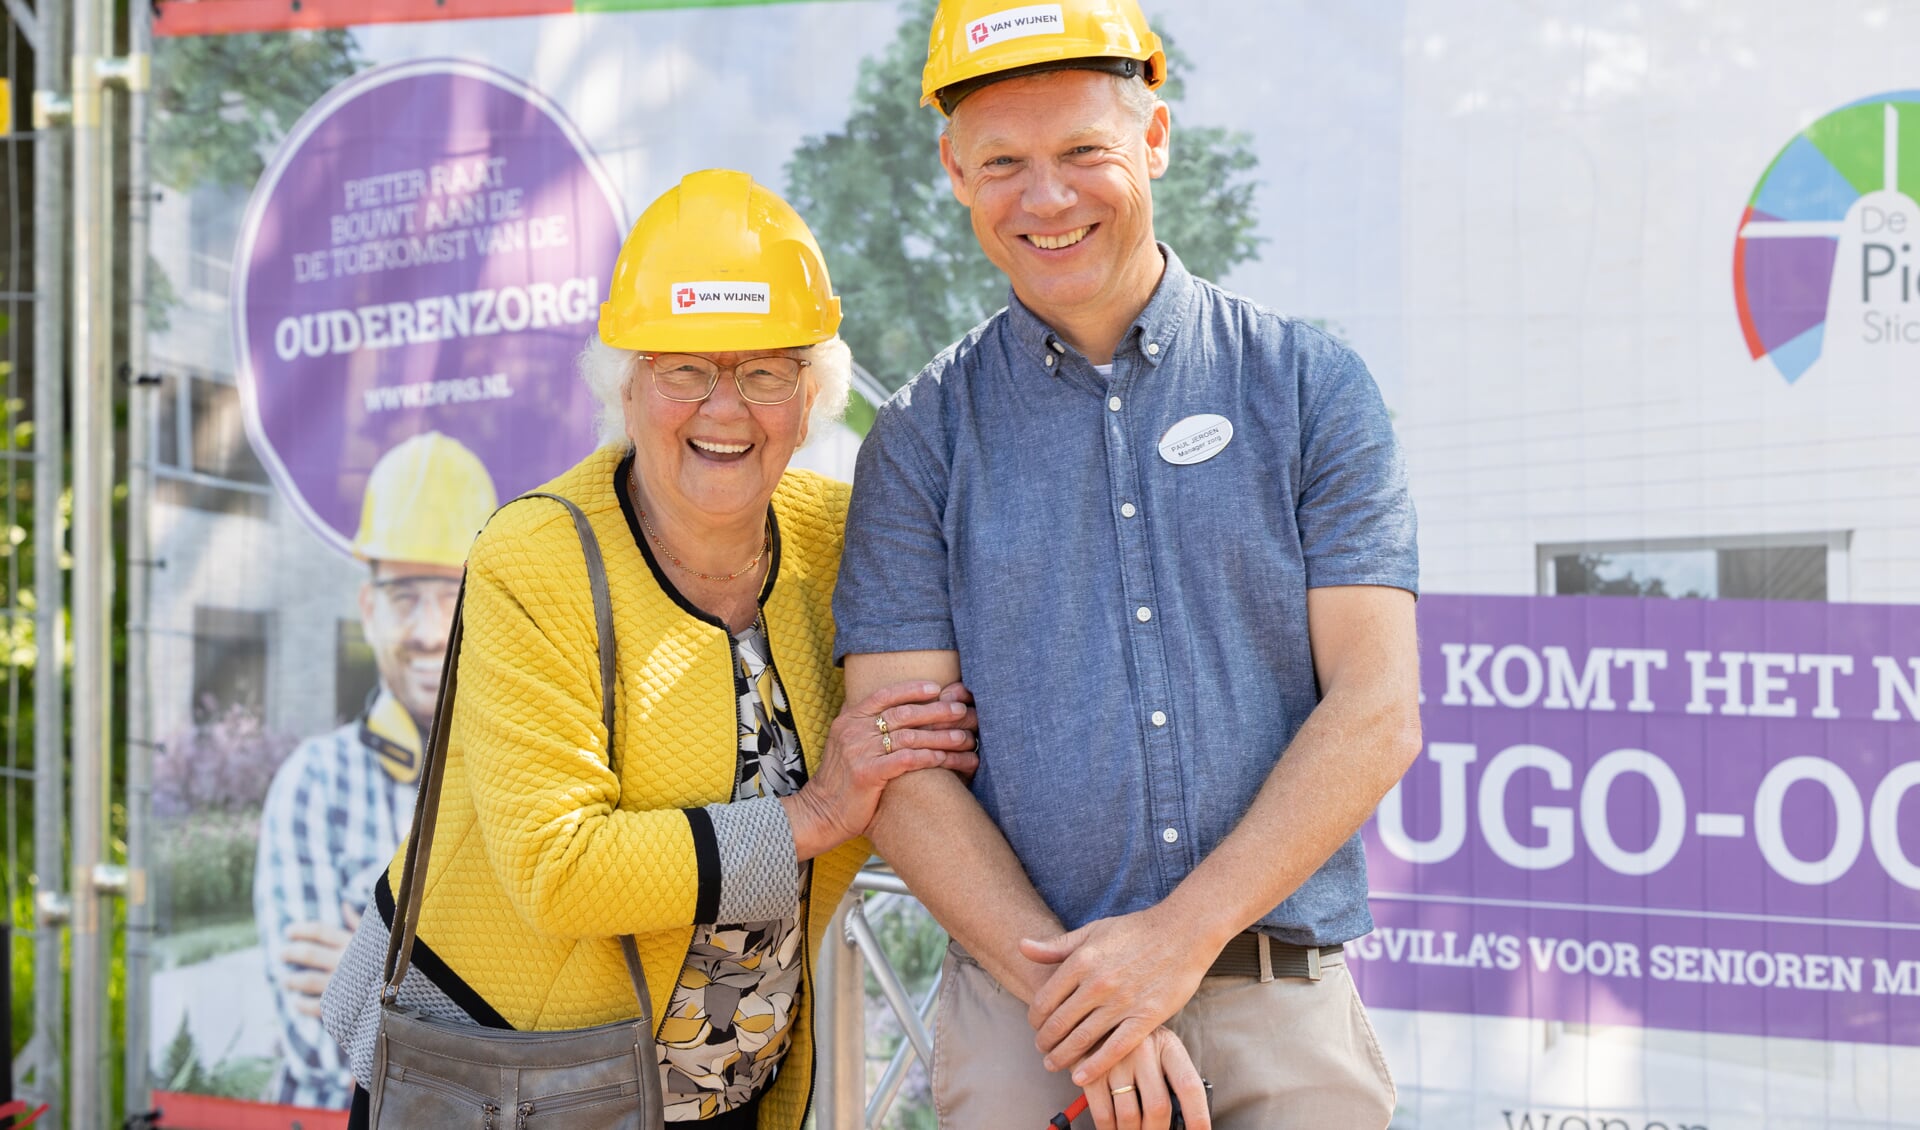 Kwartiermaker Paul Jeroen Verkade van Pieter Raat en de 88-jarige mevrouw Schouten bij de officiële start van de bouw van het nieuwe Hugo-Oord.